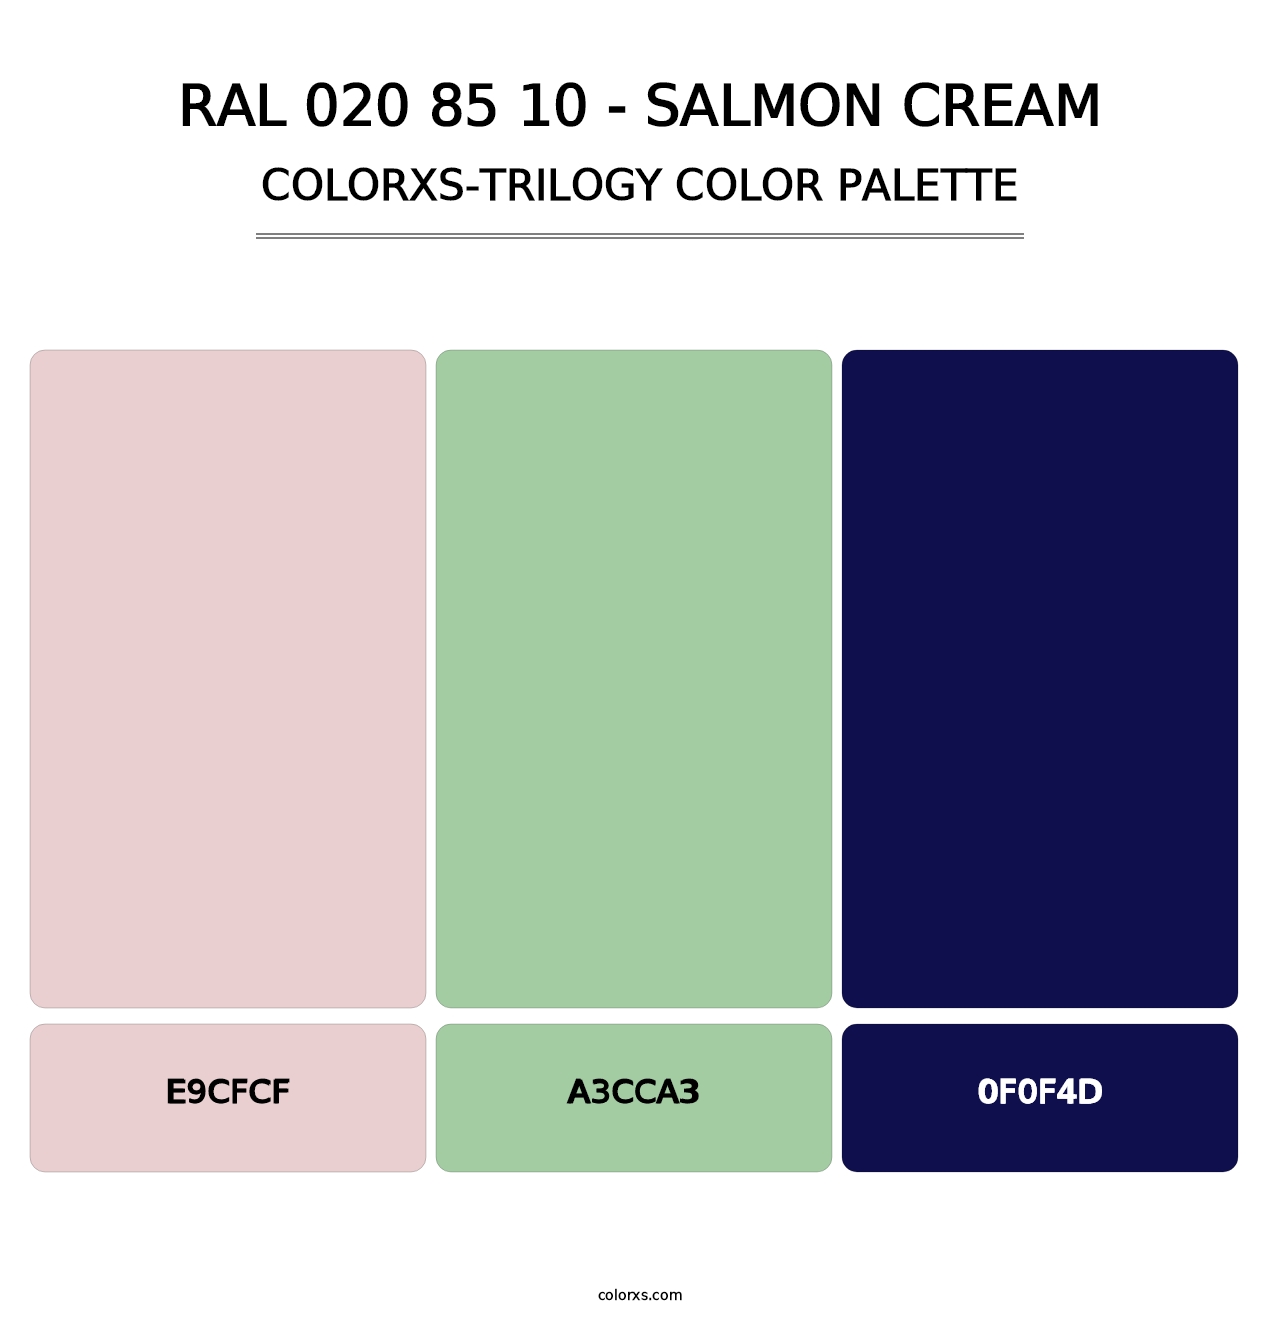 RAL 020 85 10 - Salmon Cream - Colorxs Trilogy Palette